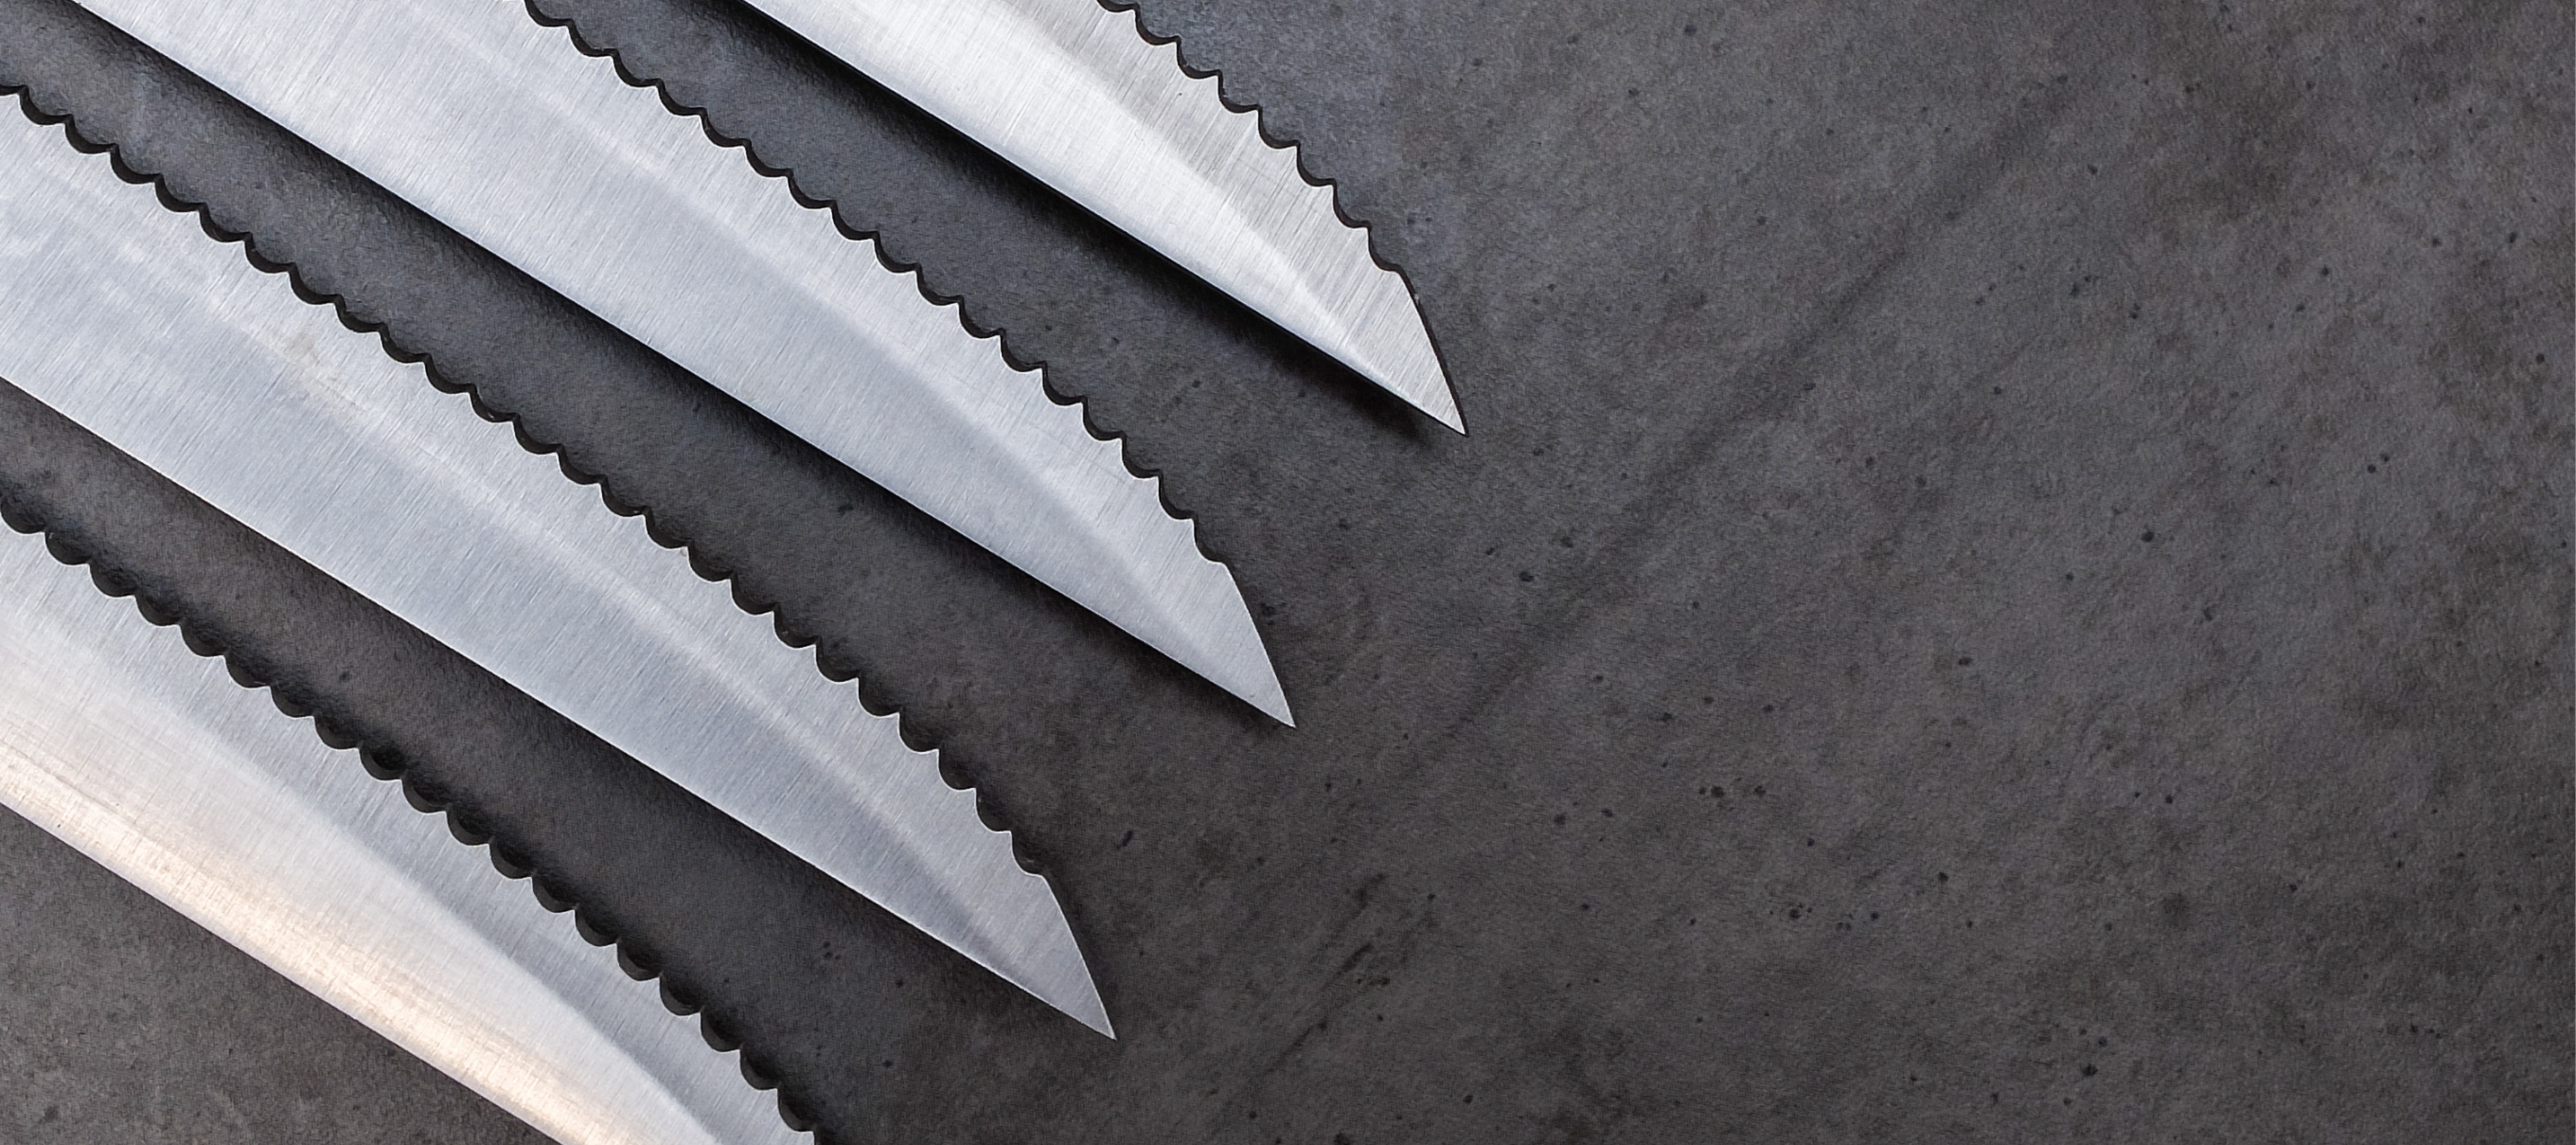 Comment aiguez-vous un couteau dentelé? – santokuknives